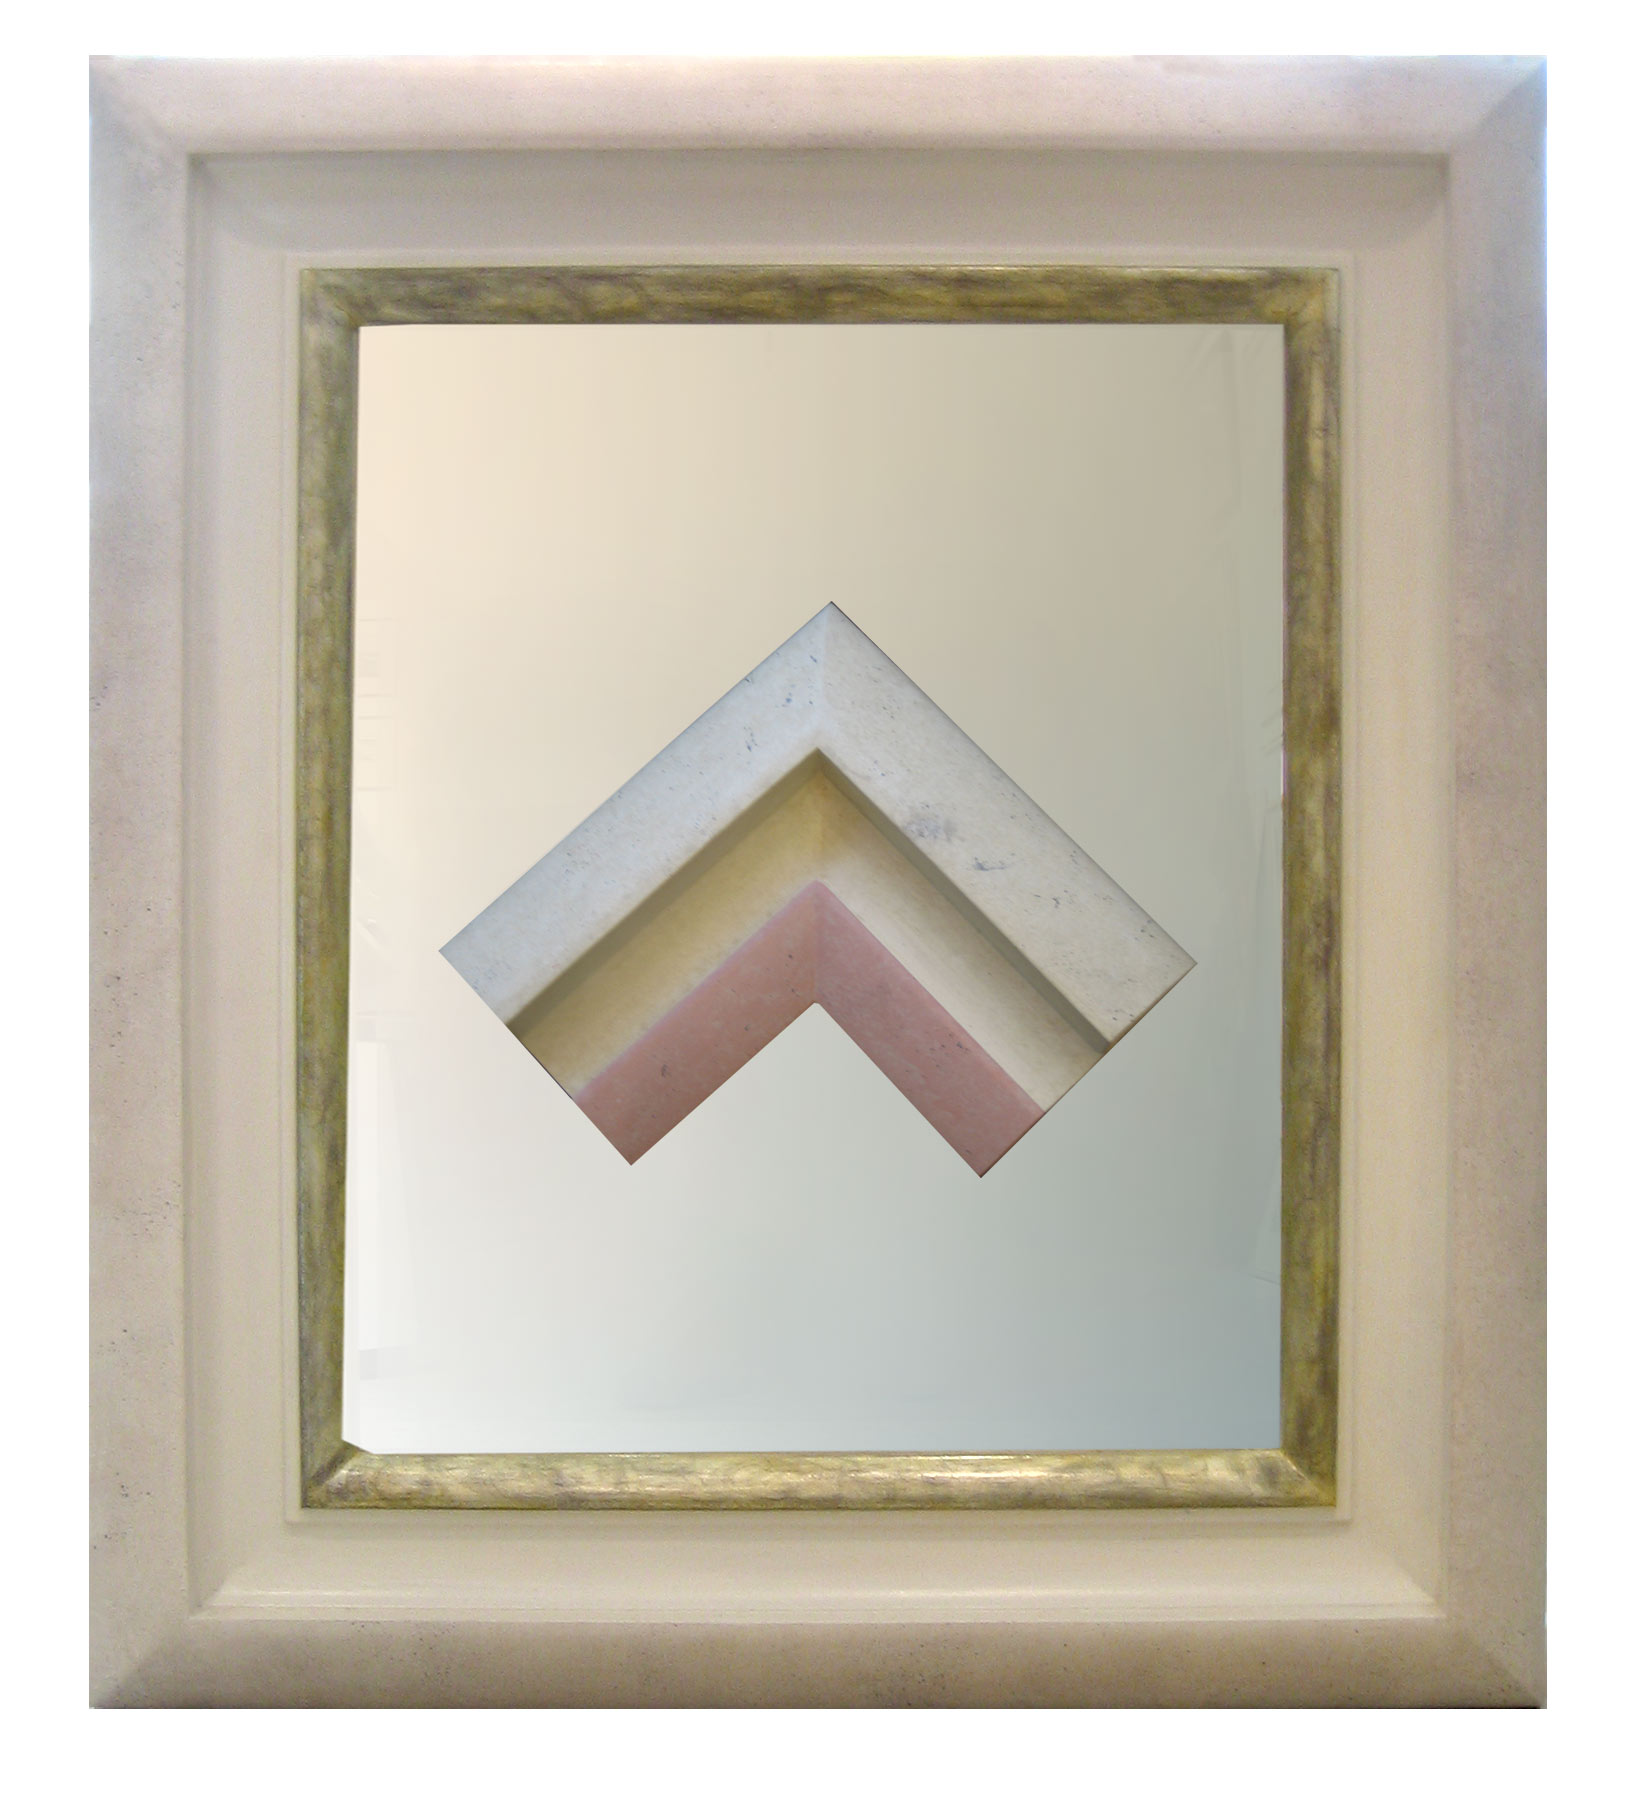 Spiegel 12 - Profilkombination aus 3 Rahmen mit vergoldeter Innenkante + Musterwinkel - Breite 17 cm